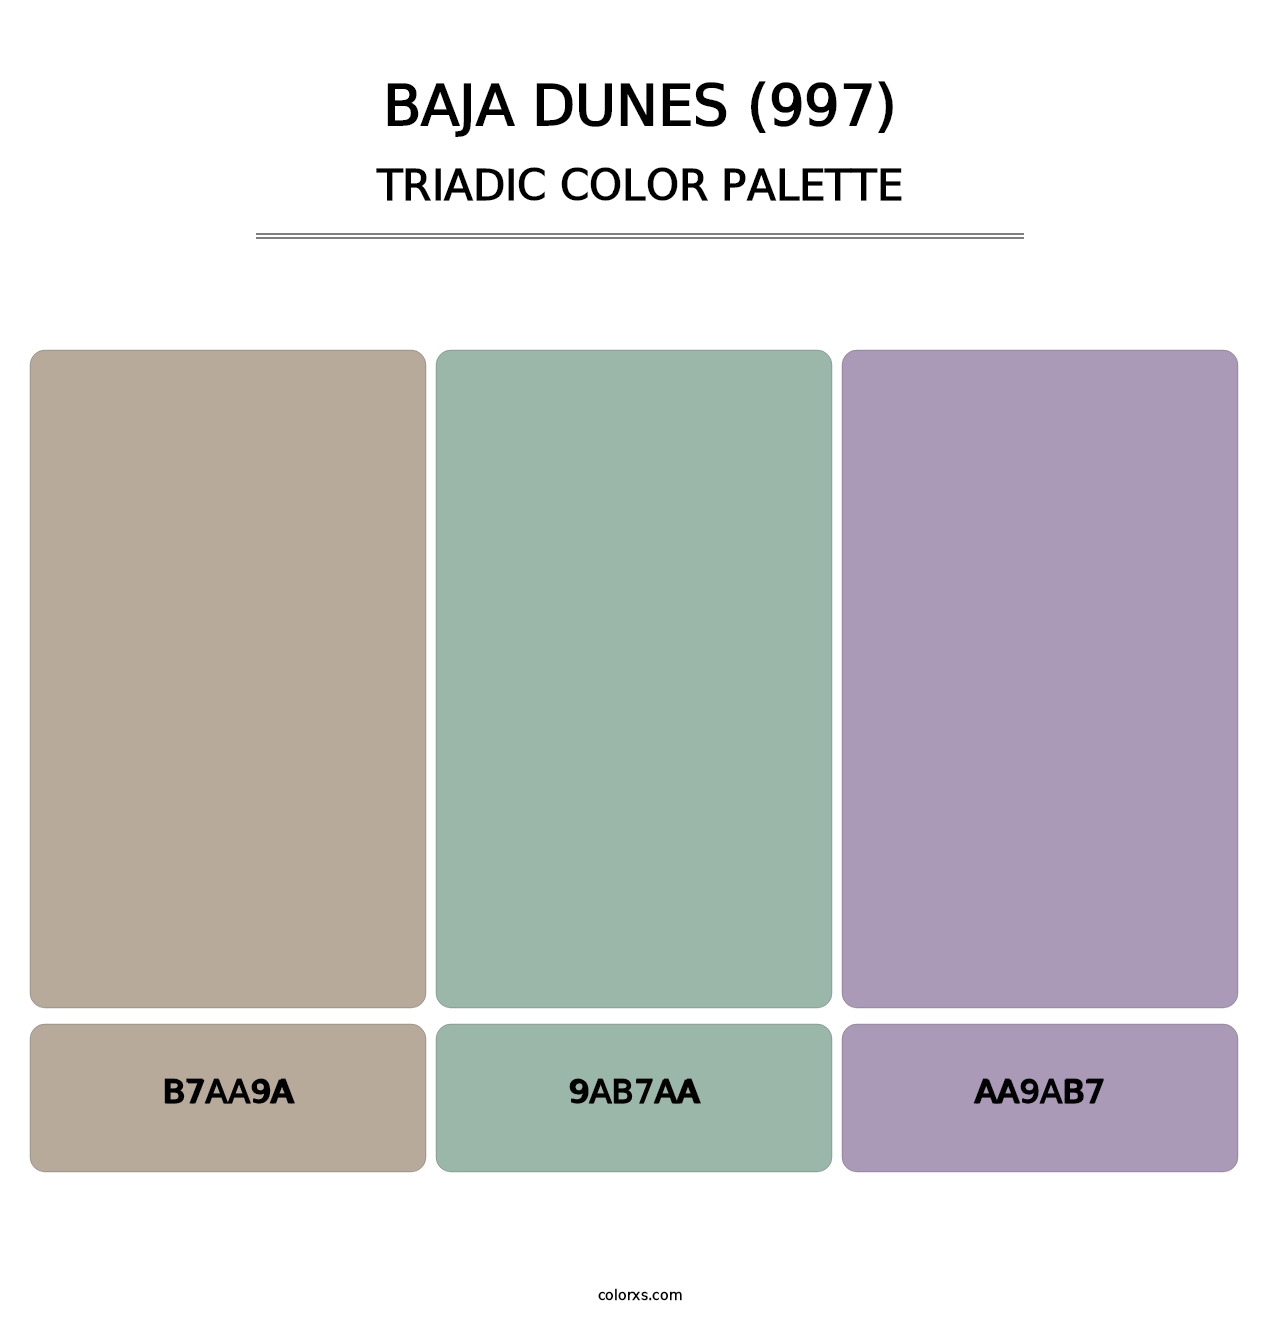 Baja Dunes (997) - Triadic Color Palette